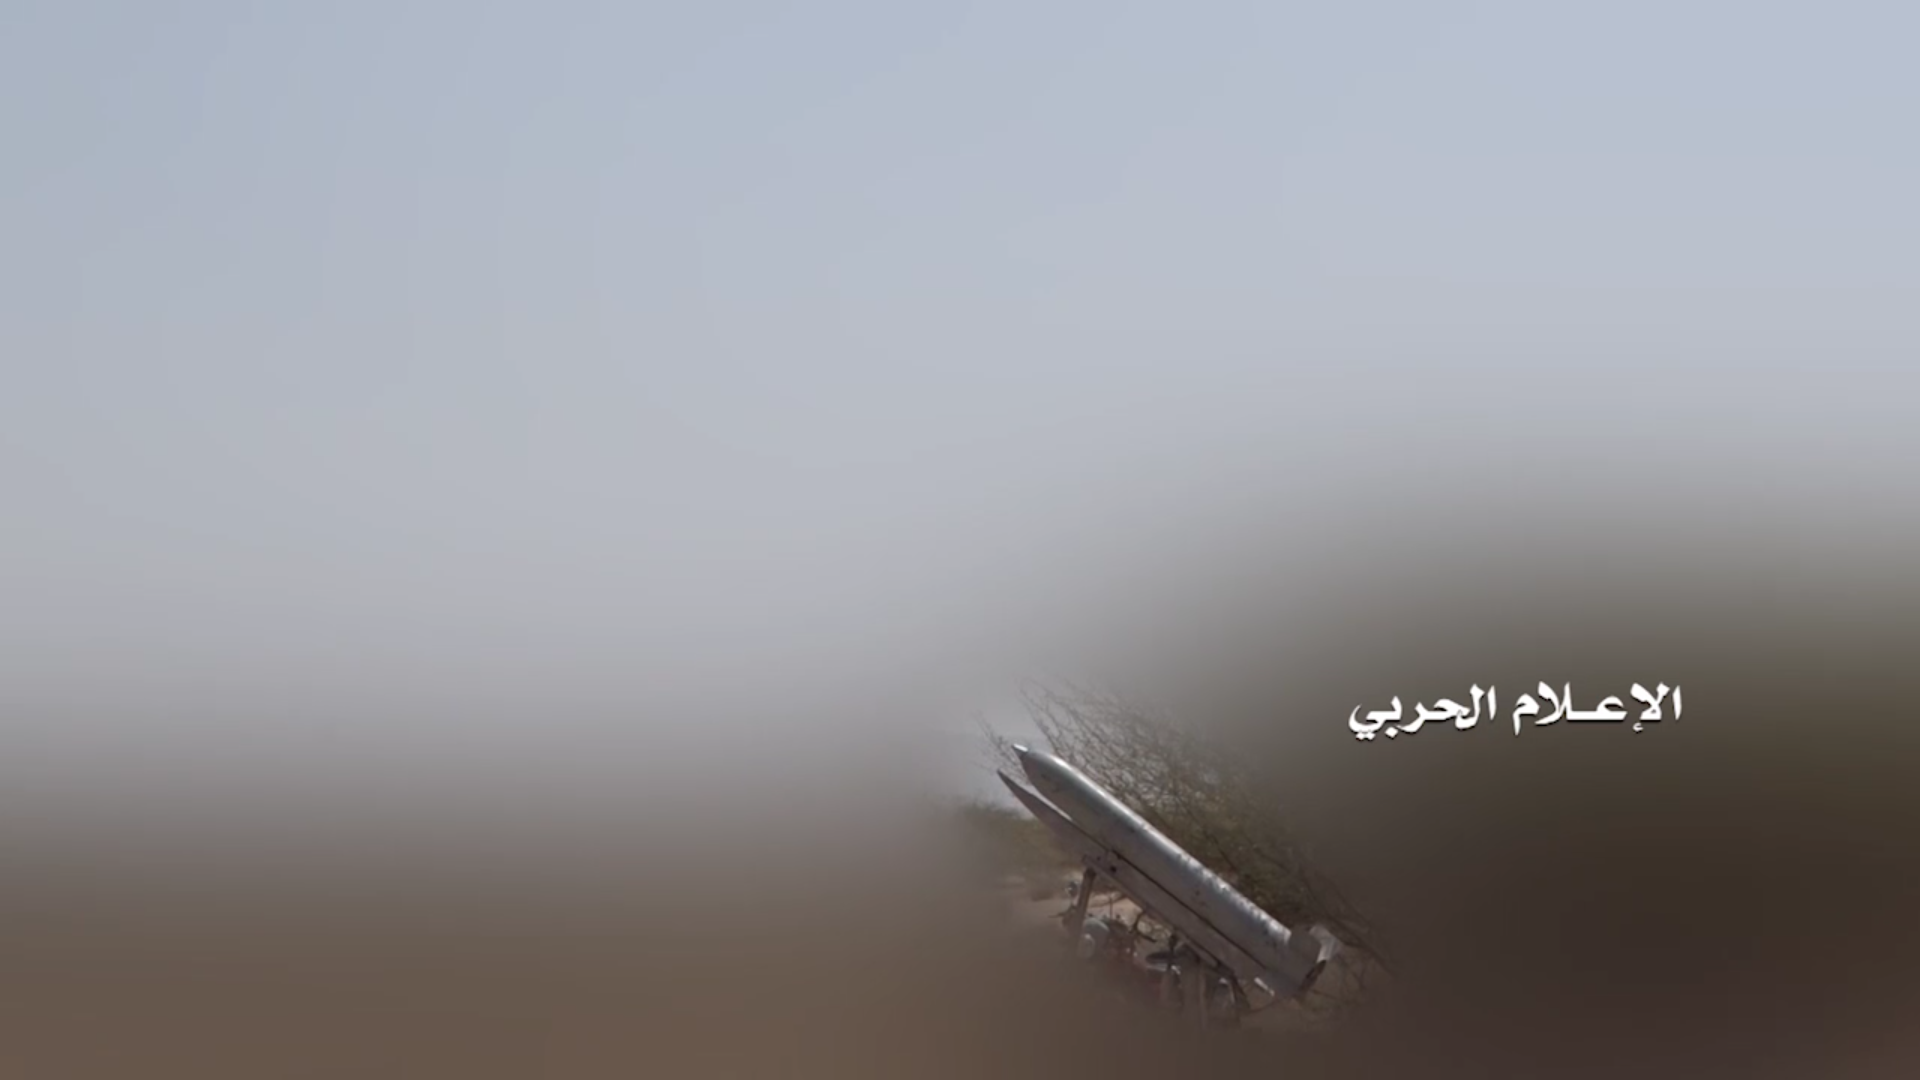 جيزان – استهدافات صاروخية ومدفعية على مواقع المنافقين وتحصيناتهم في جبل النار